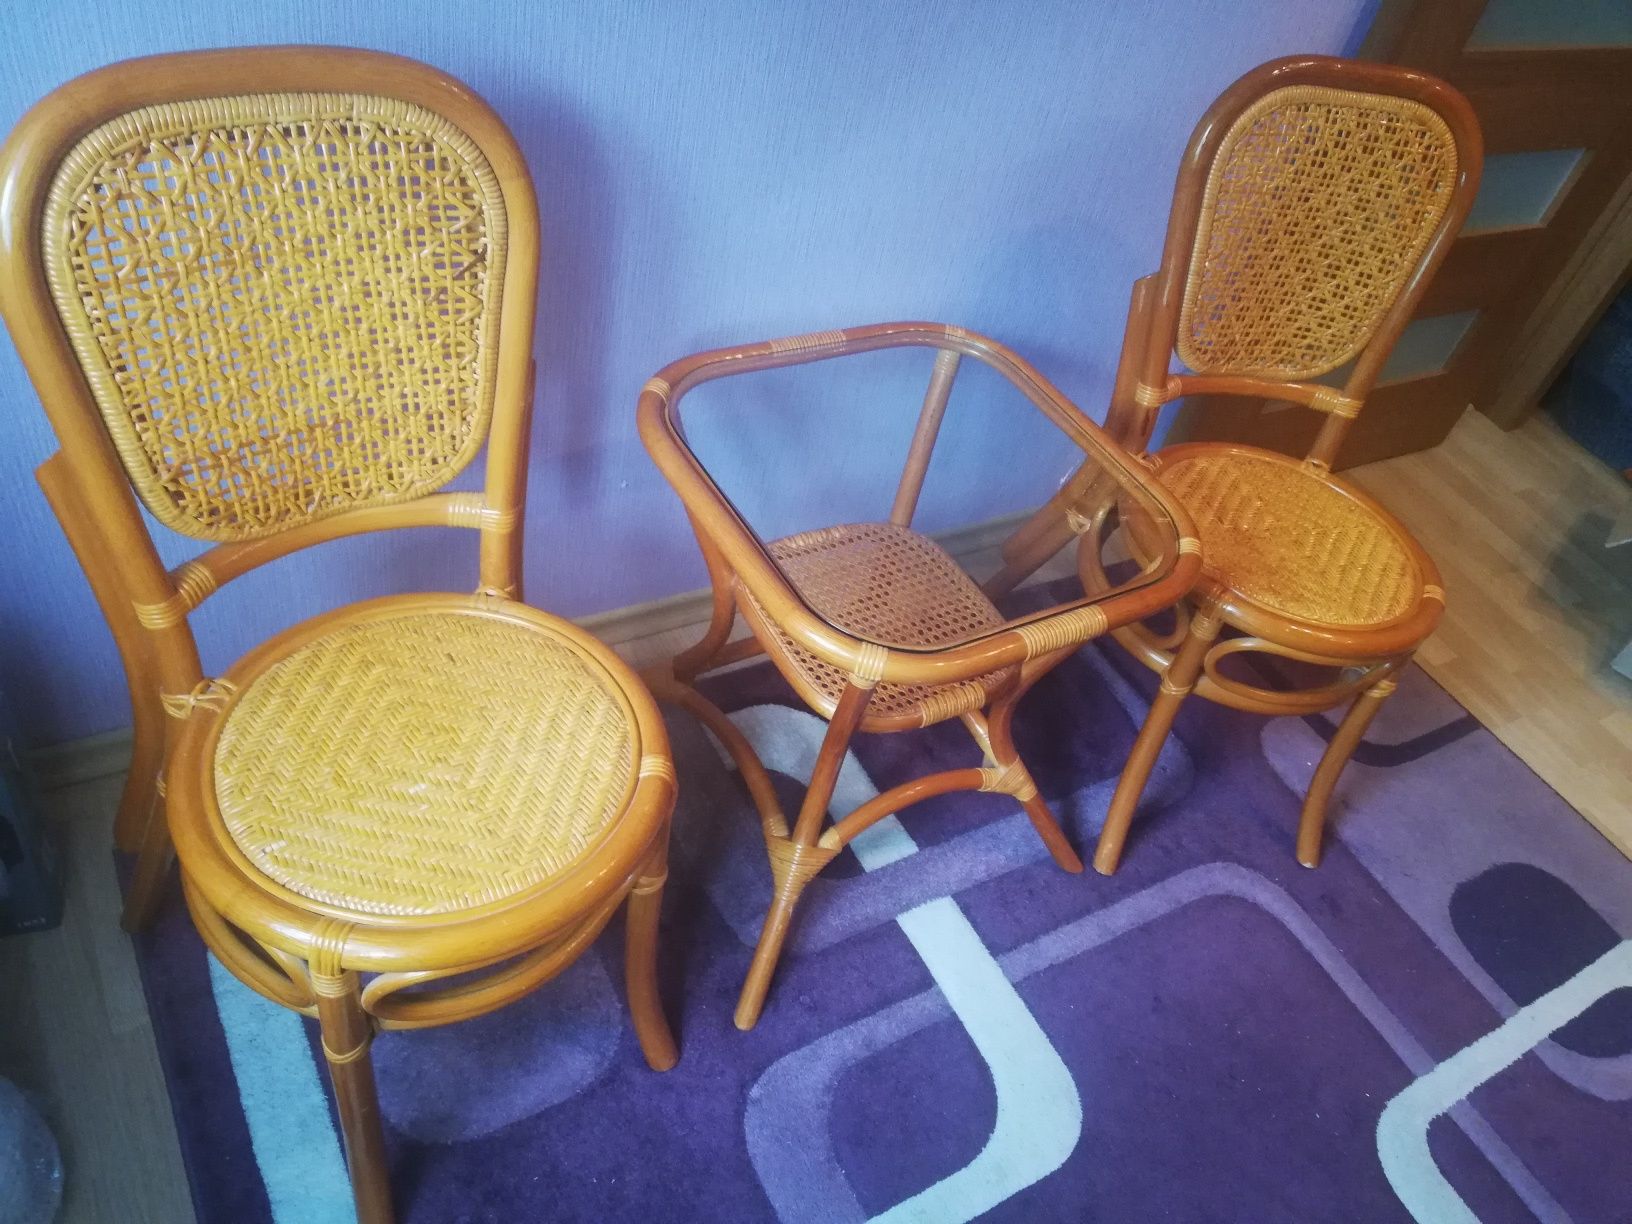 Sprzedam meble wiklinowe. Stolik i dwa krzesła.